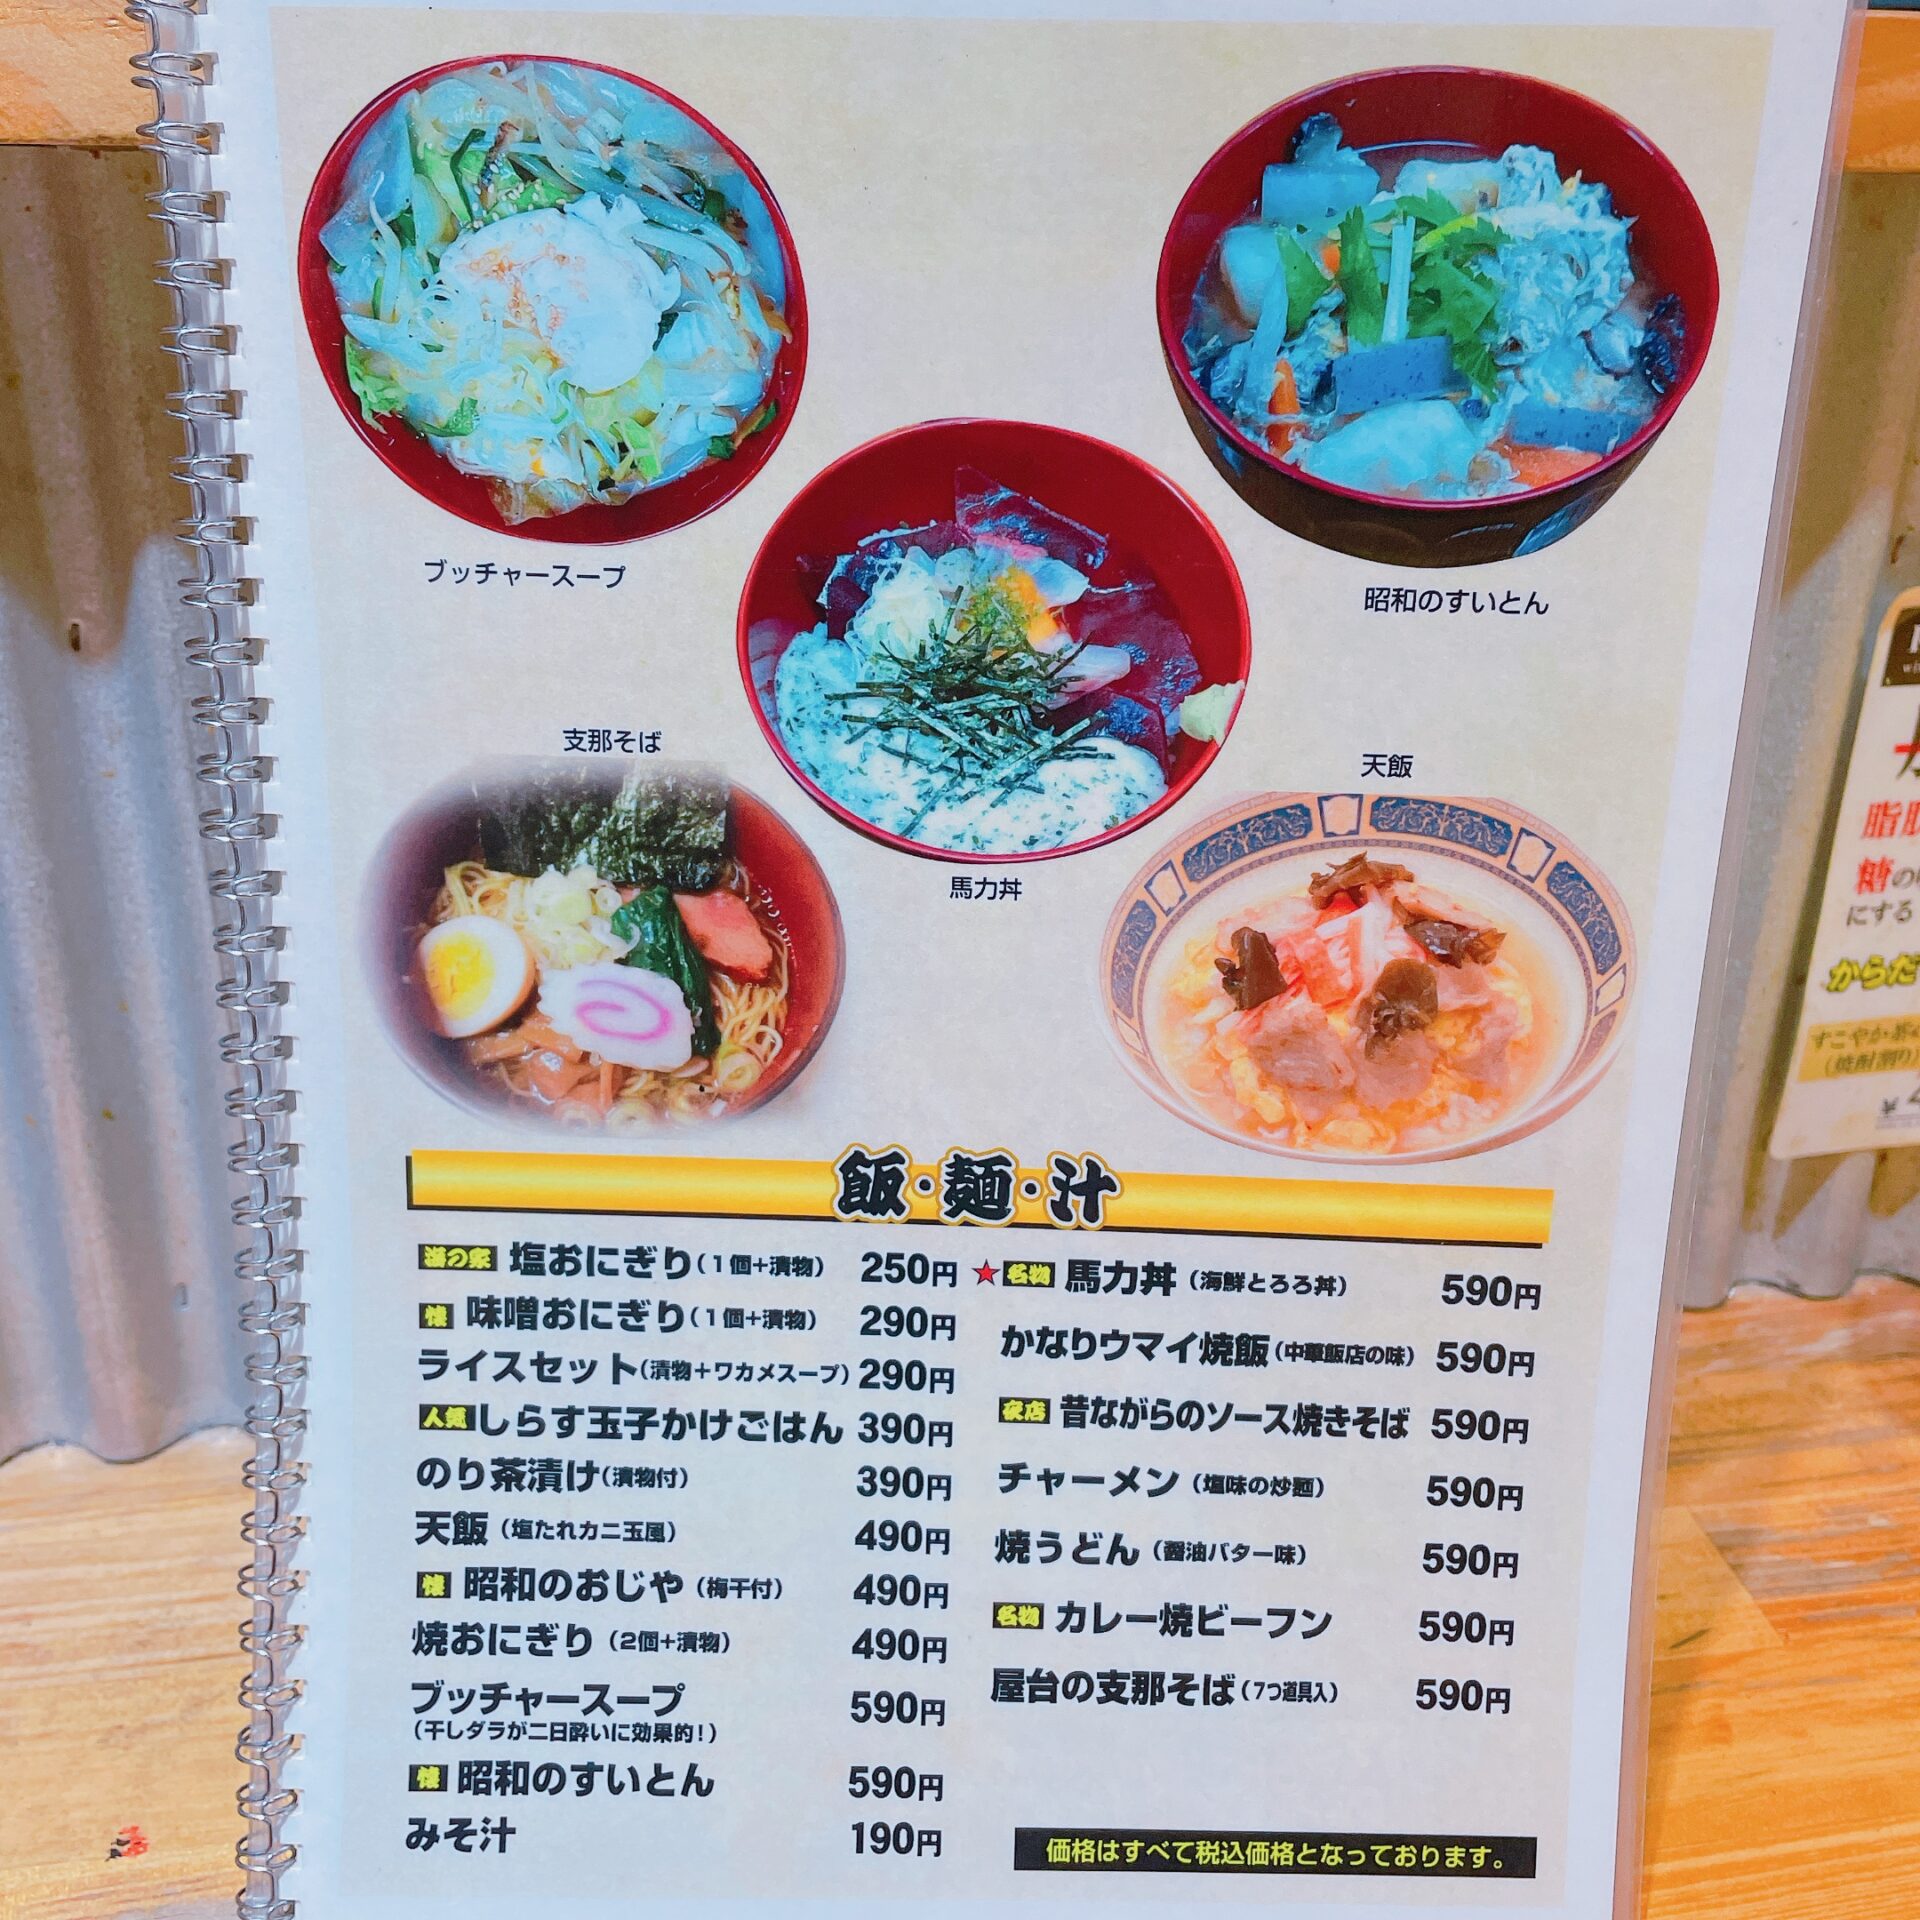 「馬力 吉祥寺店」の飯・麺・汁メニュー